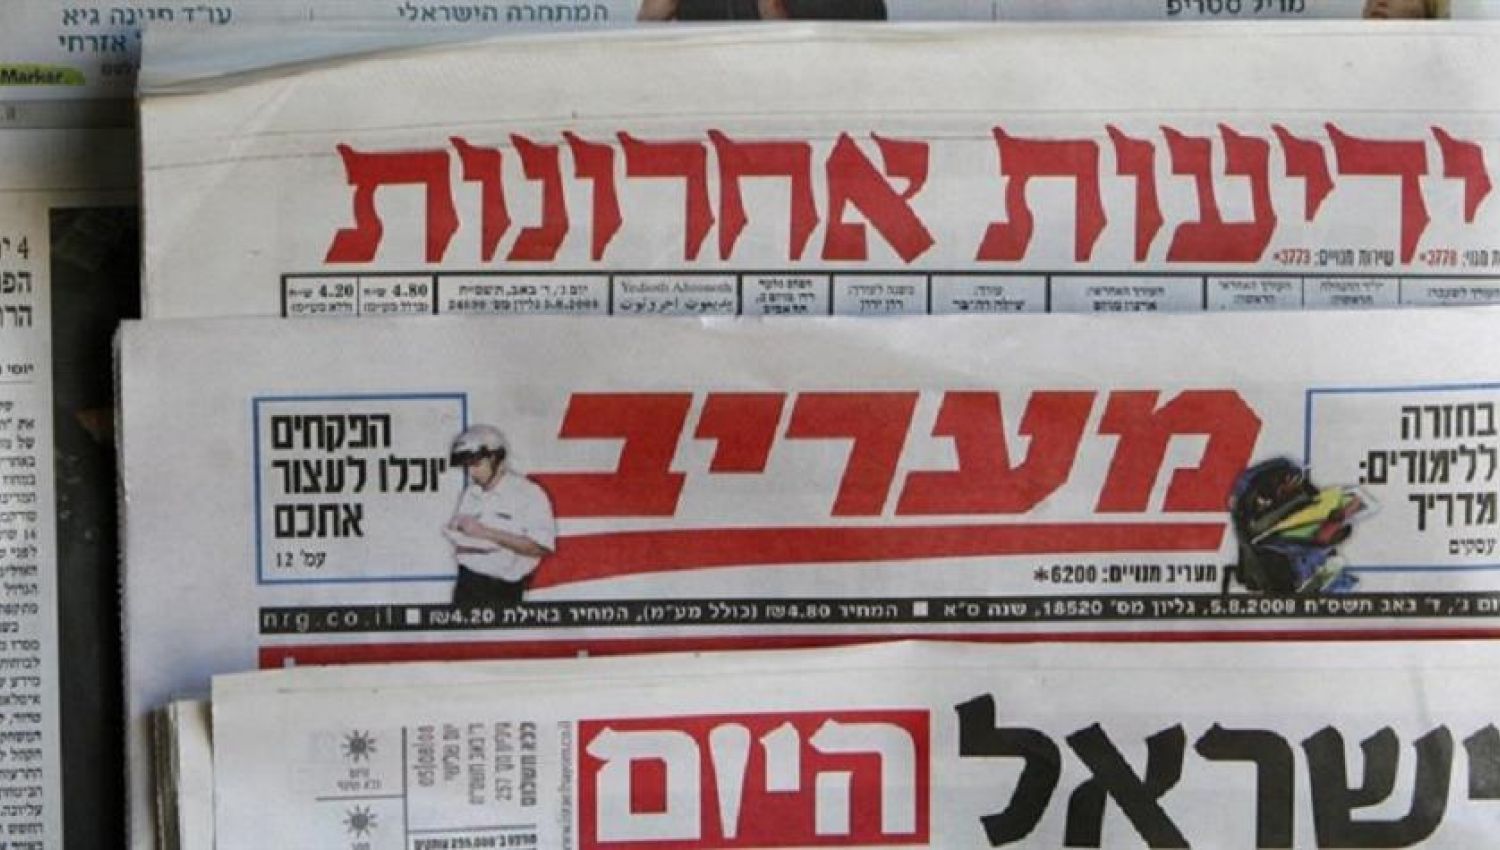 الاعلام العبري يكشف عن تورط بن سلمان بالانقلاب في الاردن